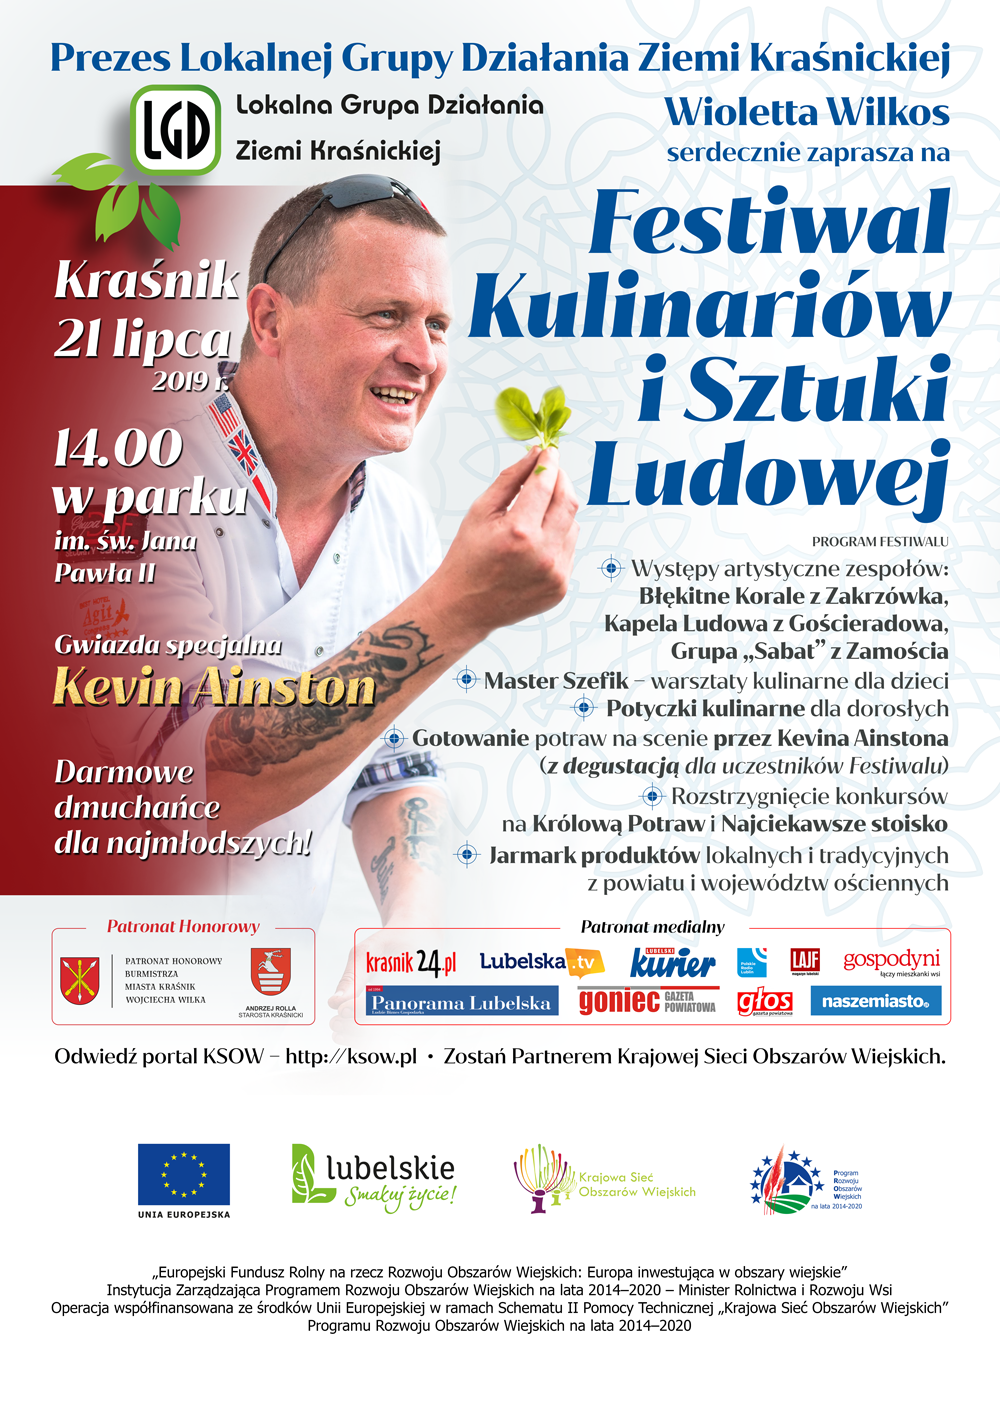 Lokalna Grupa Działania Ziemi Krasnickiej zaprasza na: Festiwal Kulinariów i Sztuki Ludowej - zdjęcie